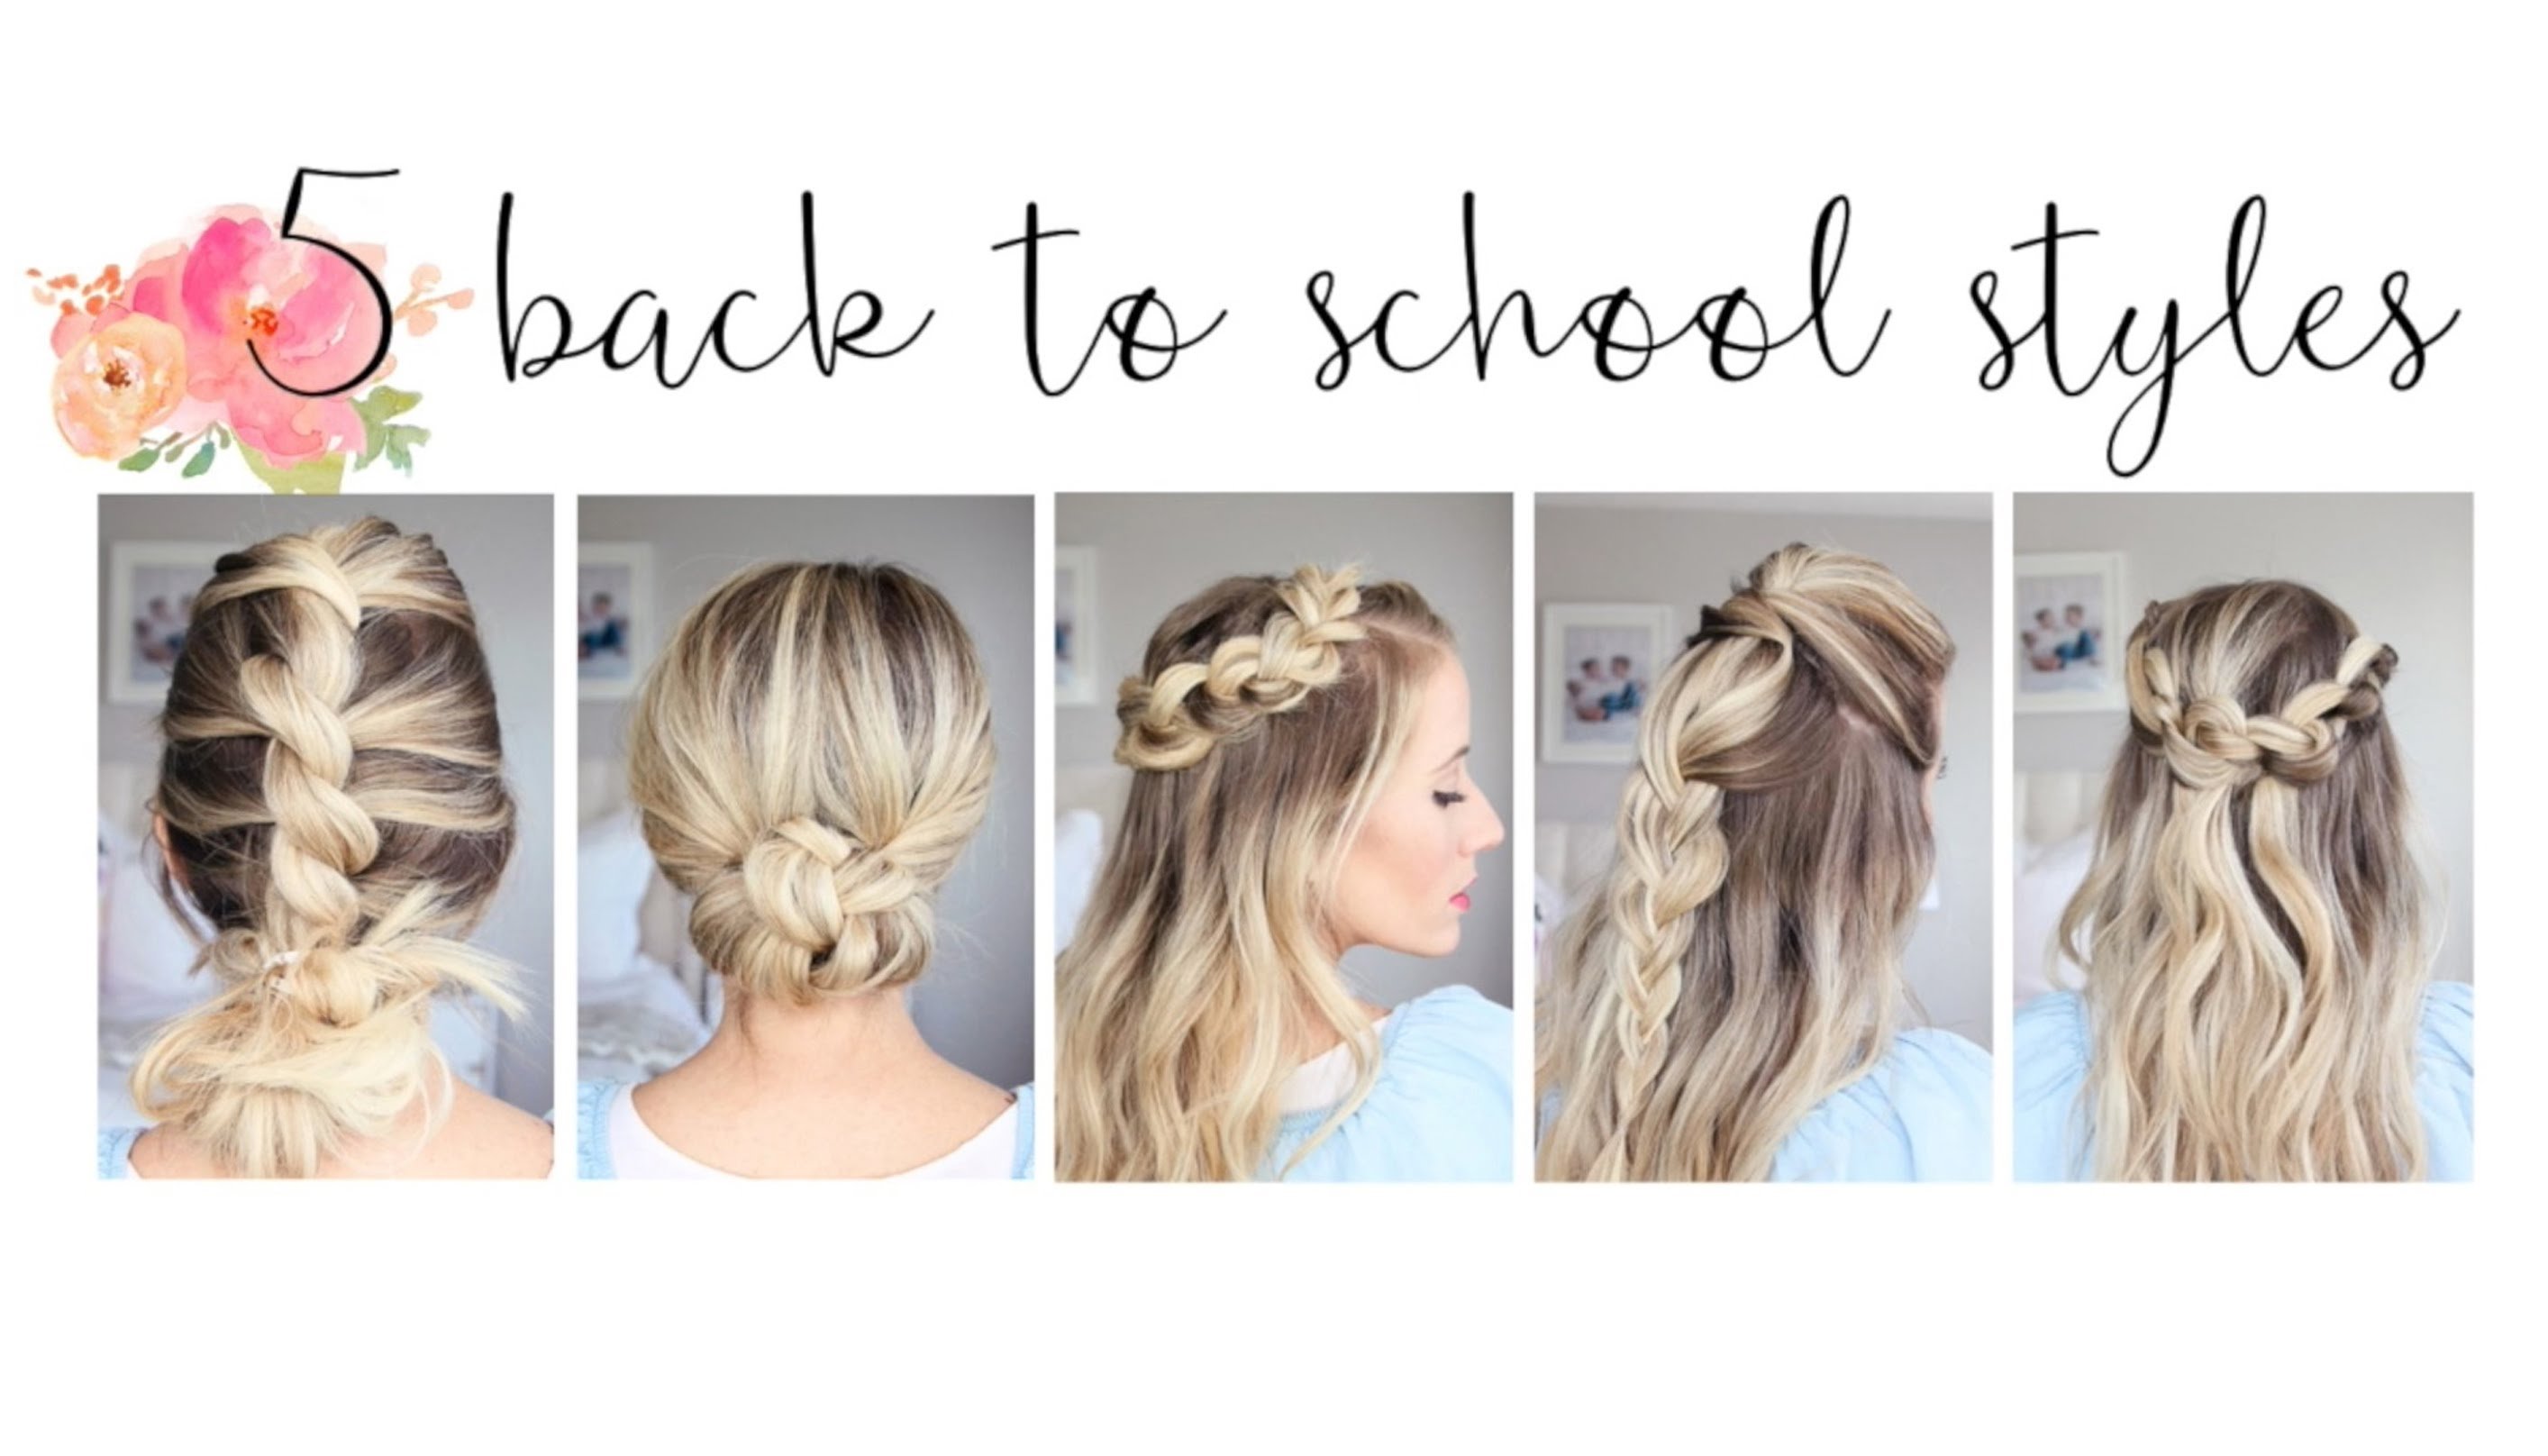 10 Elegant Cute Hair Ideas For School 5 easy back to school hairstyles cute girls hairstyles youtube 1 2022